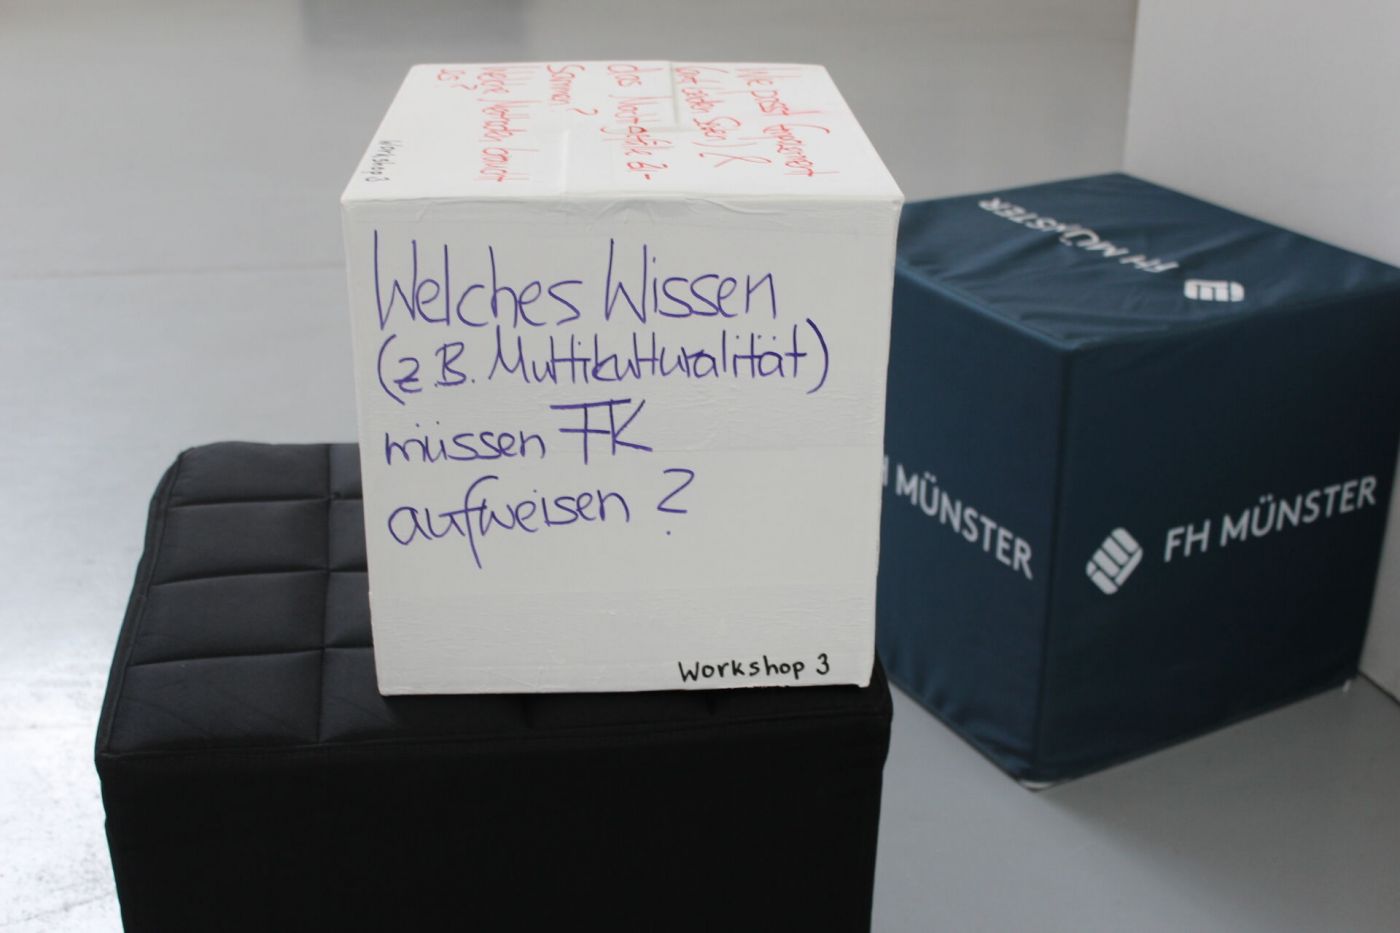 Auf einem großen Pappwürfel steht als Frage für einen der Workshops: Welches Wissen (z.B. Multikulturalität) müssen FK aufweisen?". (Foto: FH Münster/Tjorven Thorwesten )